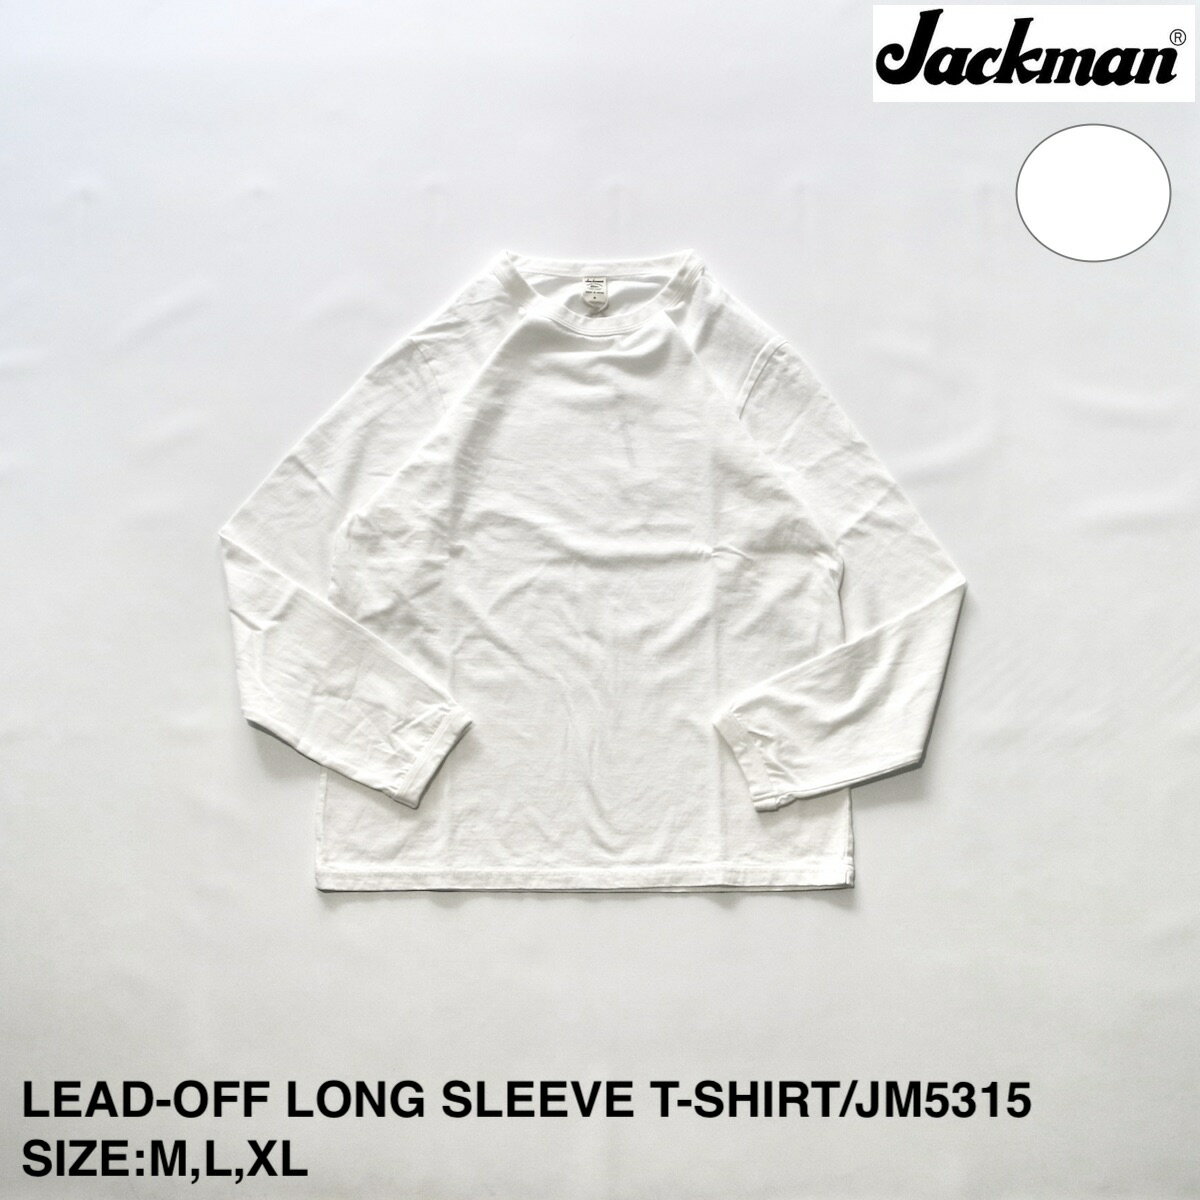 ジャックマン LEAD-OFF LONG SLEEVE T-SHIRT | メンズ Tシャツ メンズTシャツ ロンT クルーネック クルーネックTシャツ クルーネックロンT リードオフ リードオフTシャツ リードオフロンT カジュアル カットソー シンプル ブランド 無地 無地Tシャツ 日本製